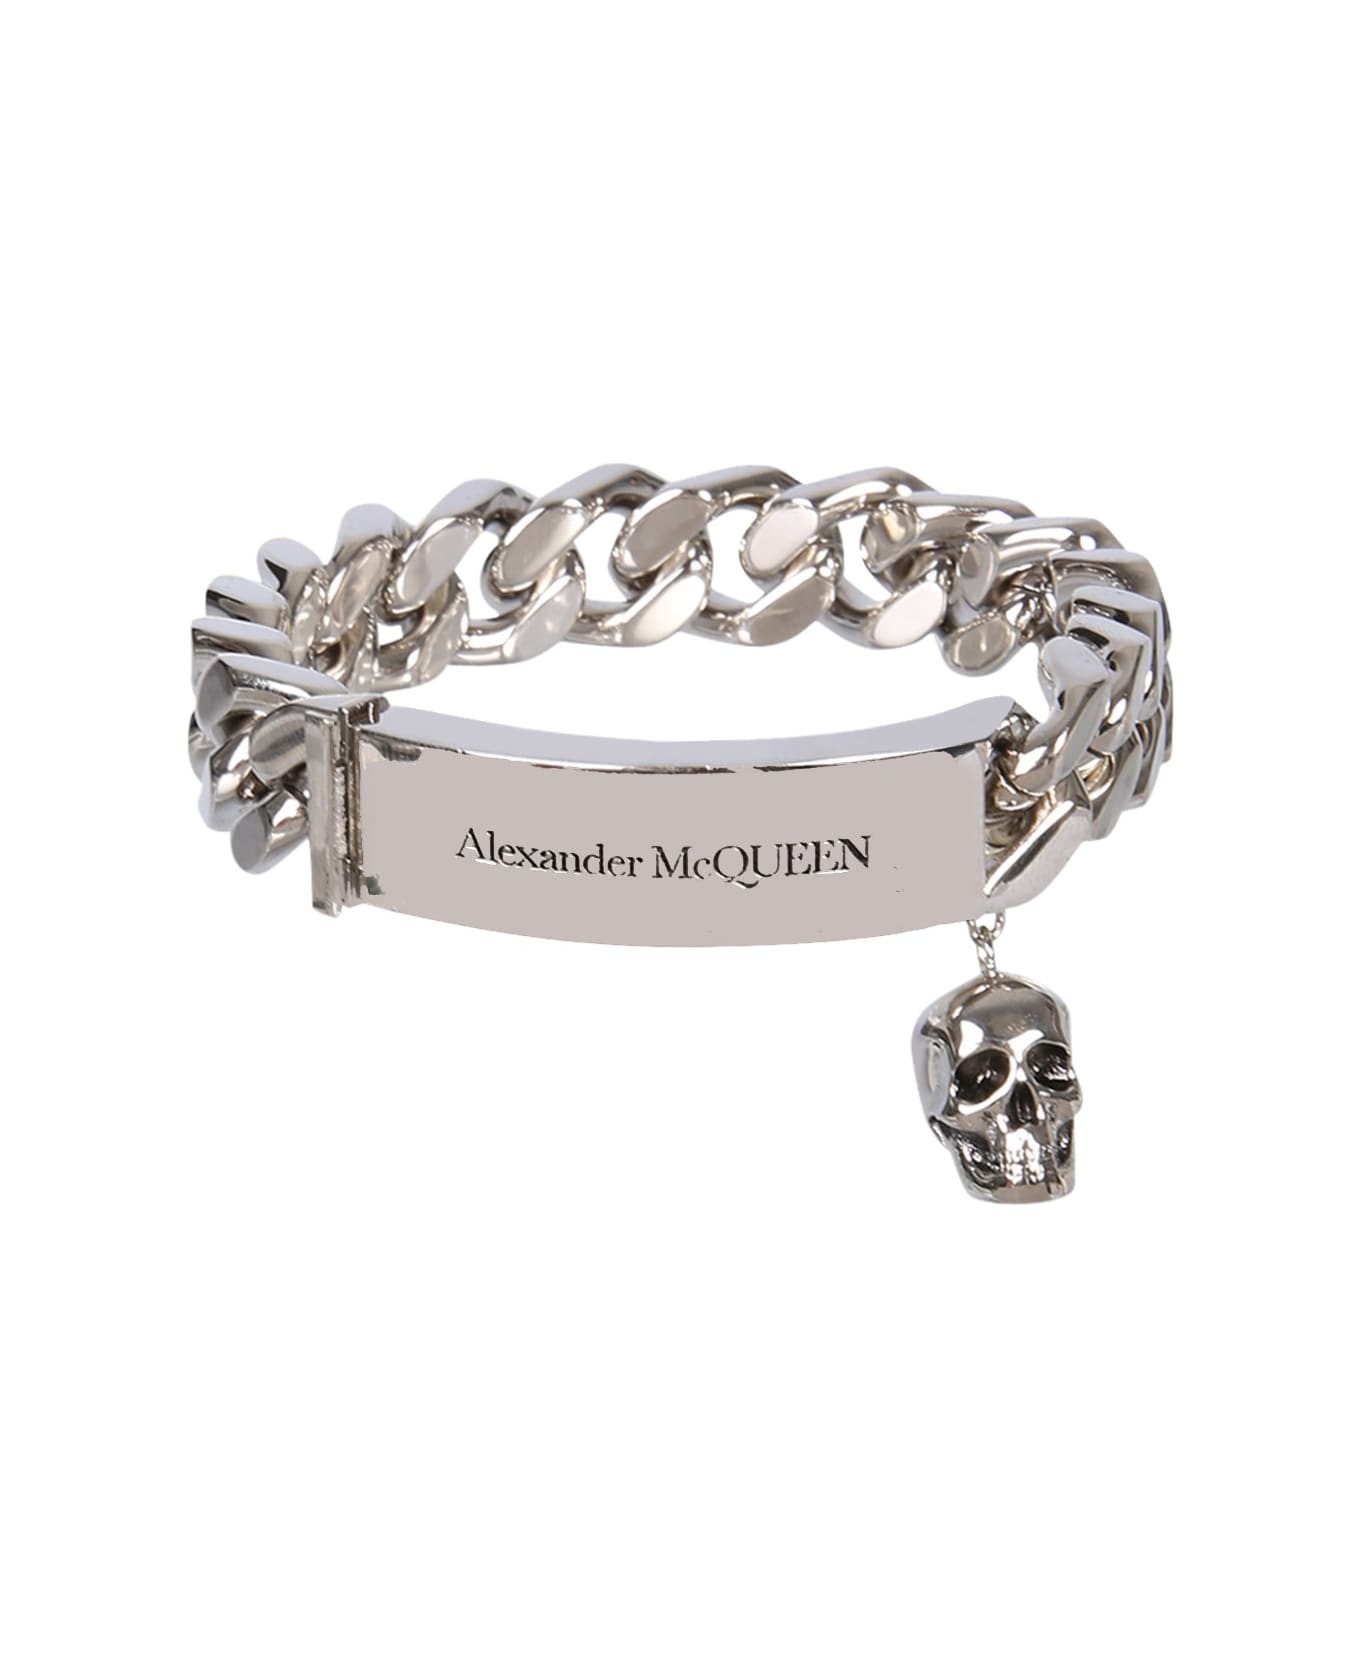 Alexander McQueen Chain Identity Bracelet - ARGENTO